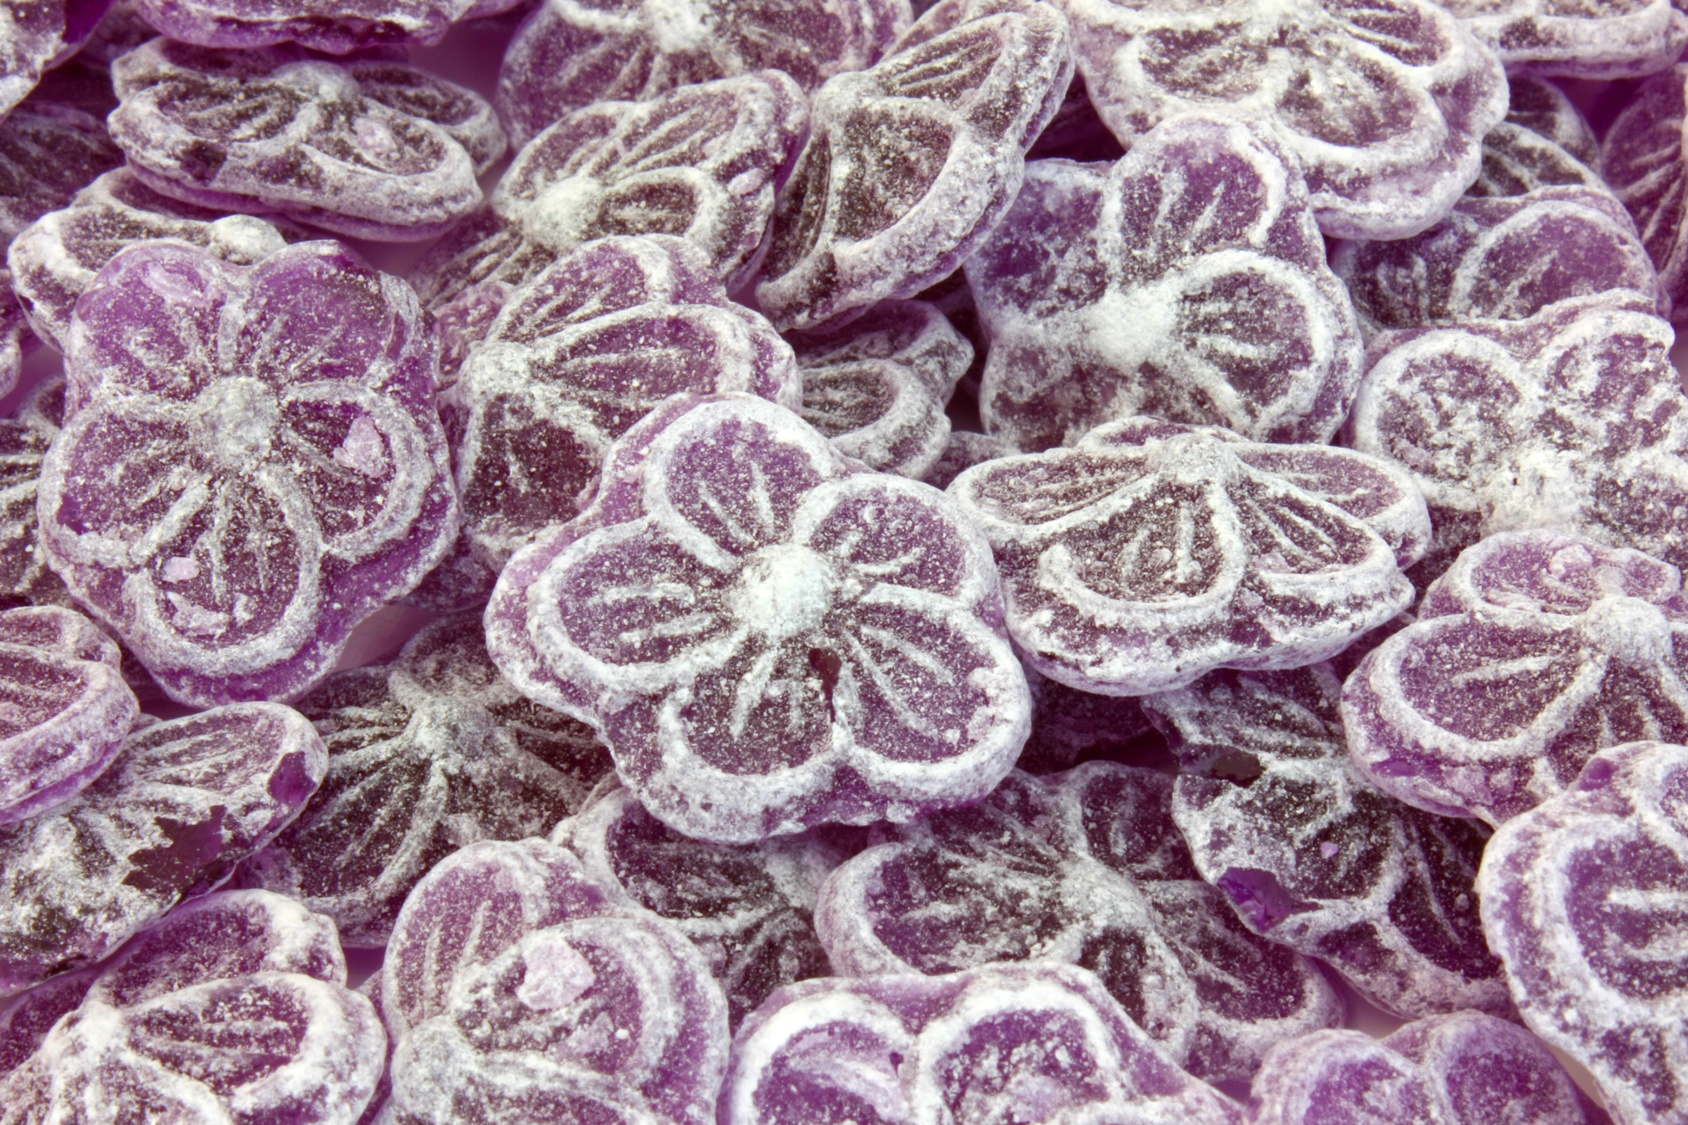 La violette de Toulouse est aussi connue en tant que bonbon. © Brat Pict, Fotolia